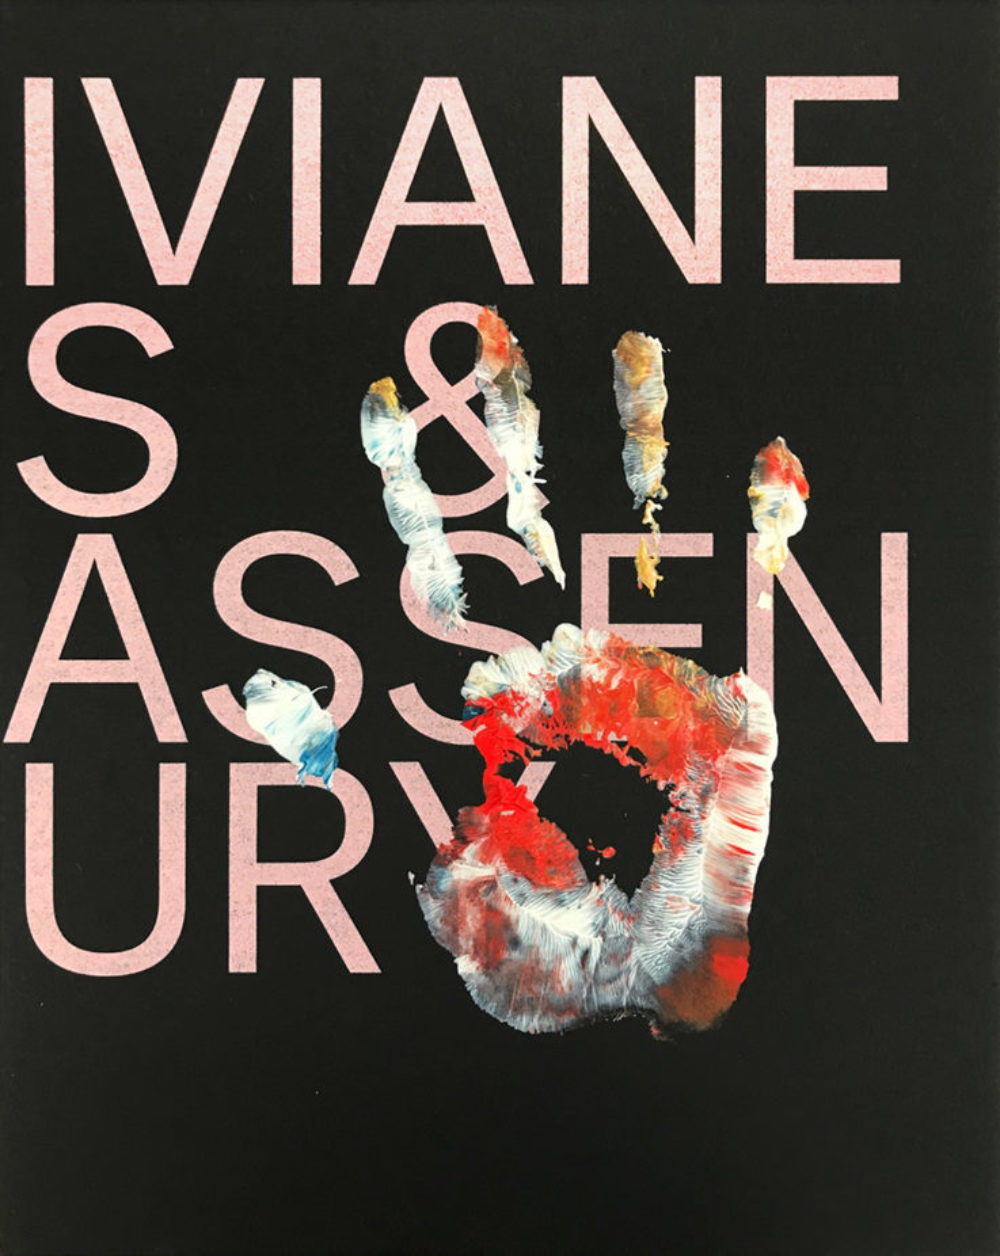 Viviane Sassen  National Galleries of Scotland